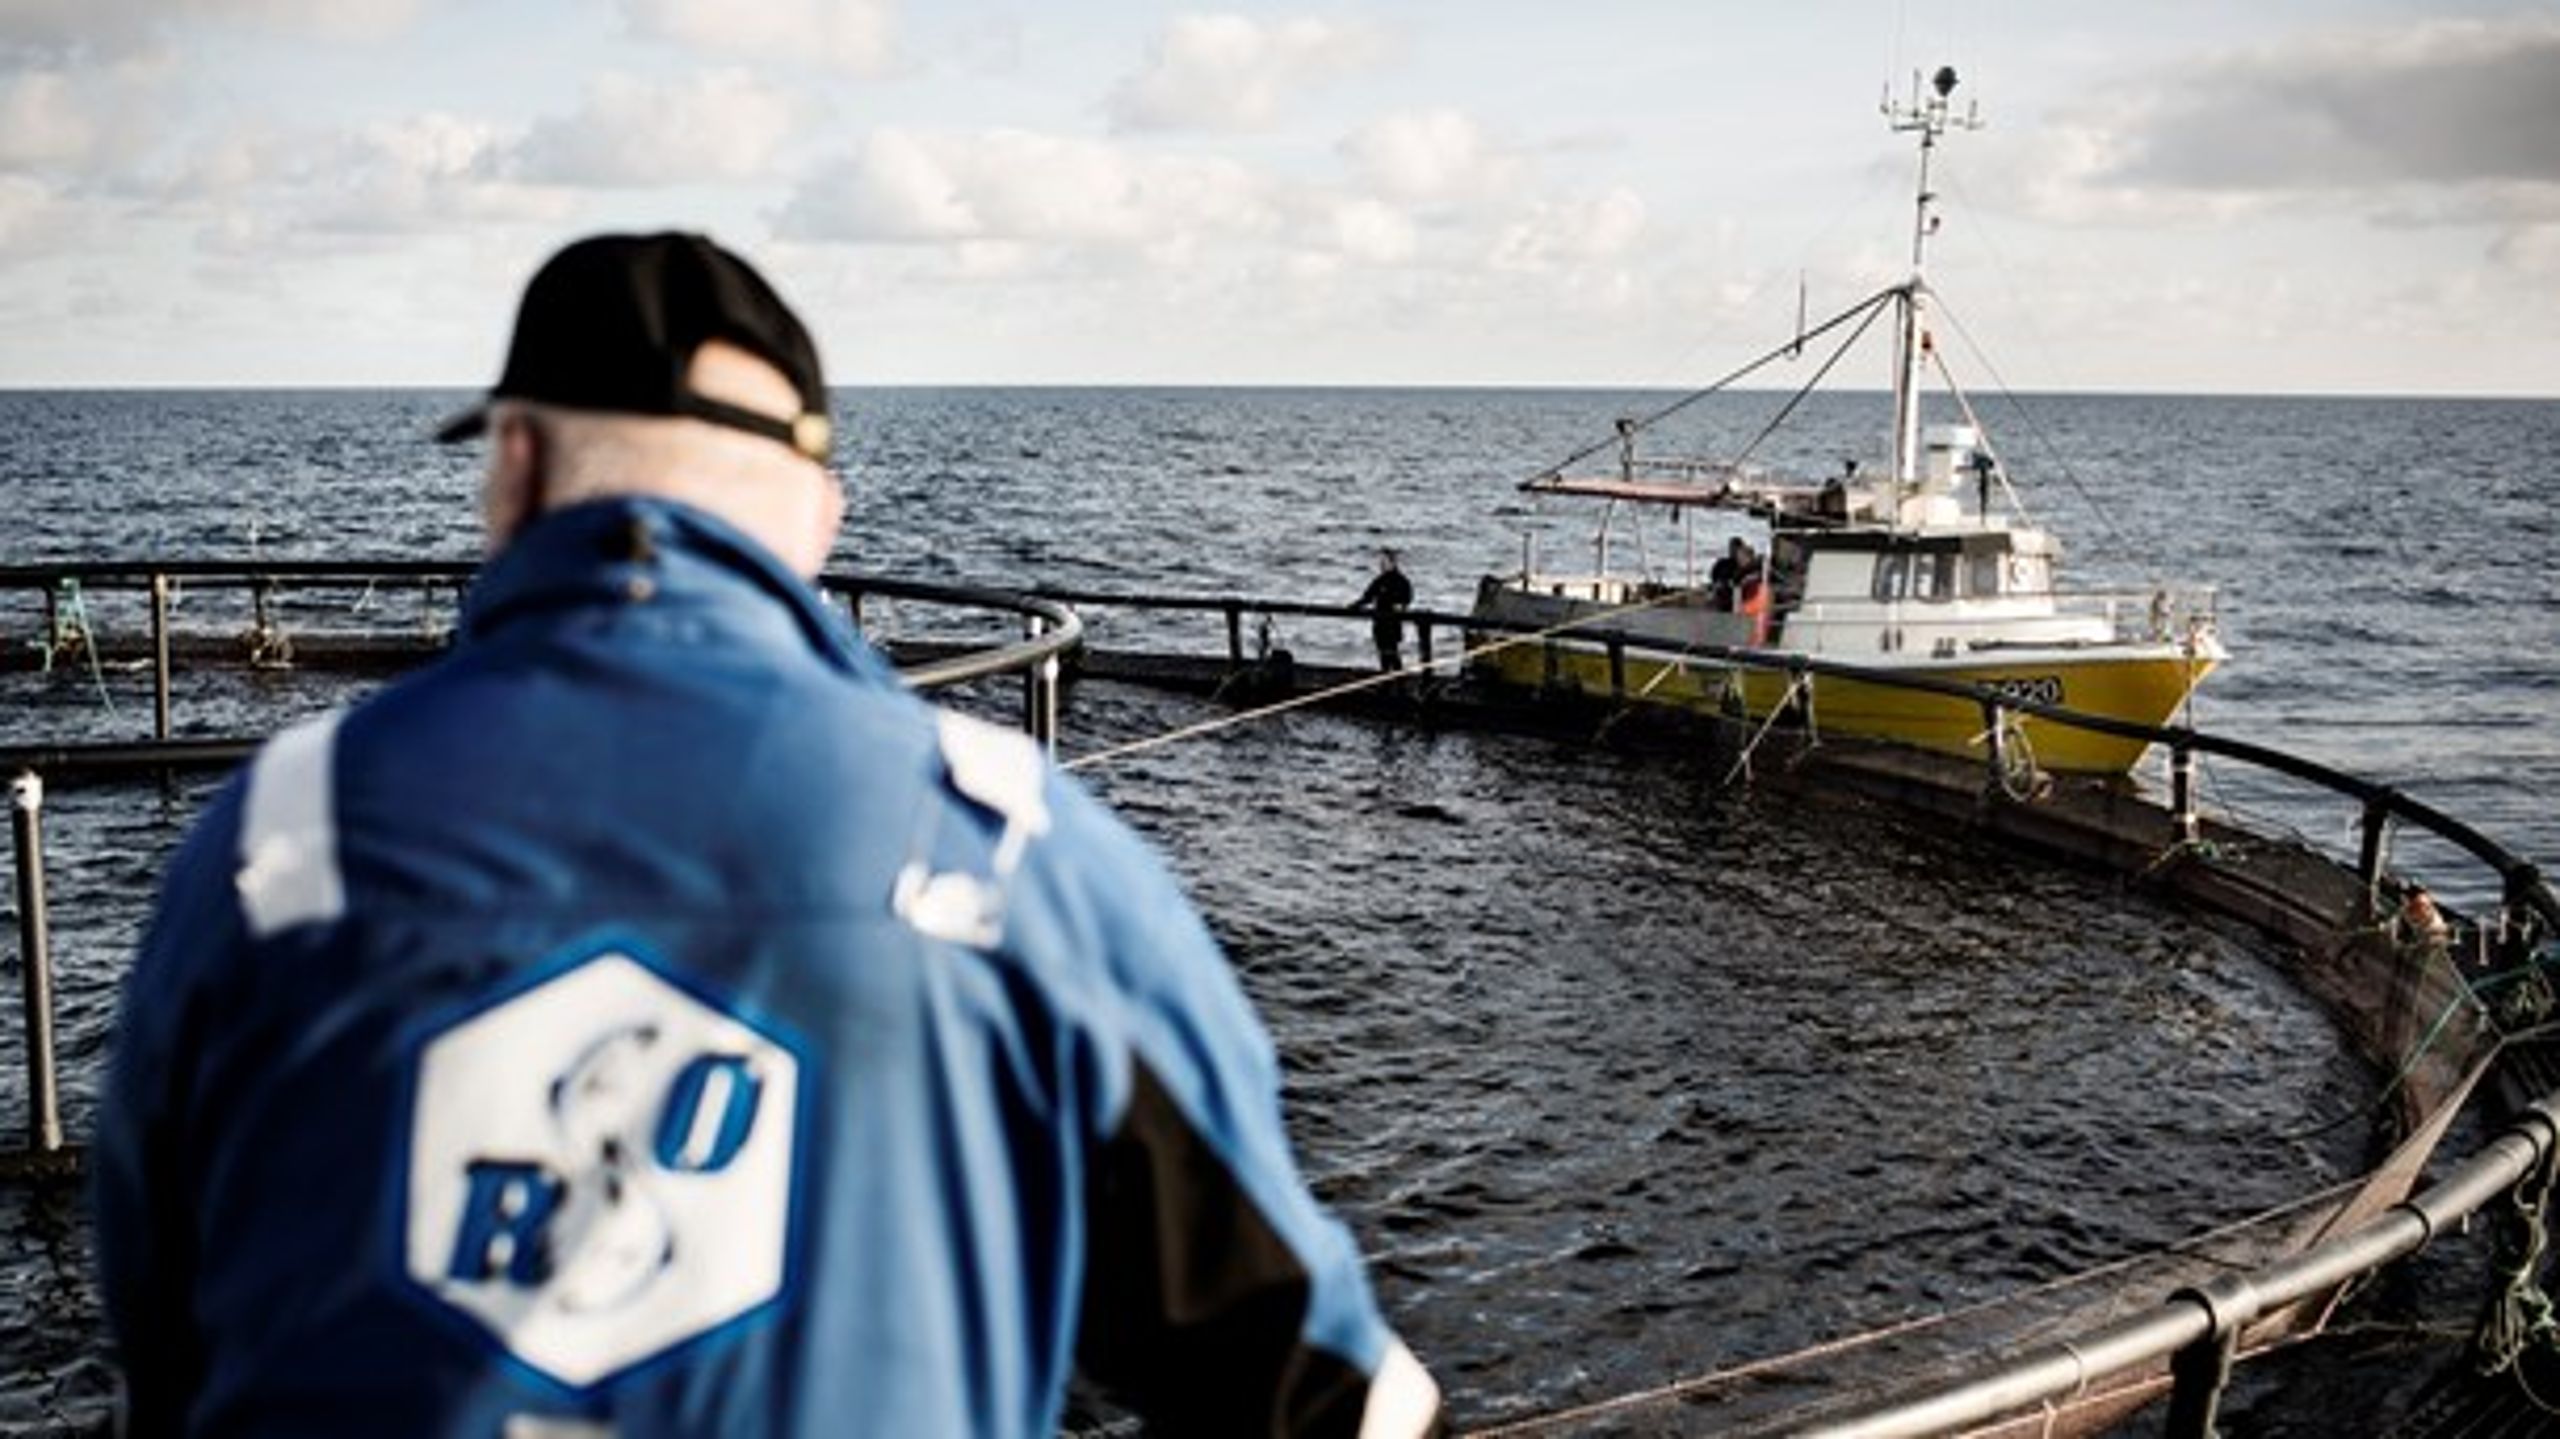 Dansk Akvakultur fremfører en række påstande om havbrug og Greenpeace, der ikke passer, skriver Magnus Eckeskog fra Greenpeace.